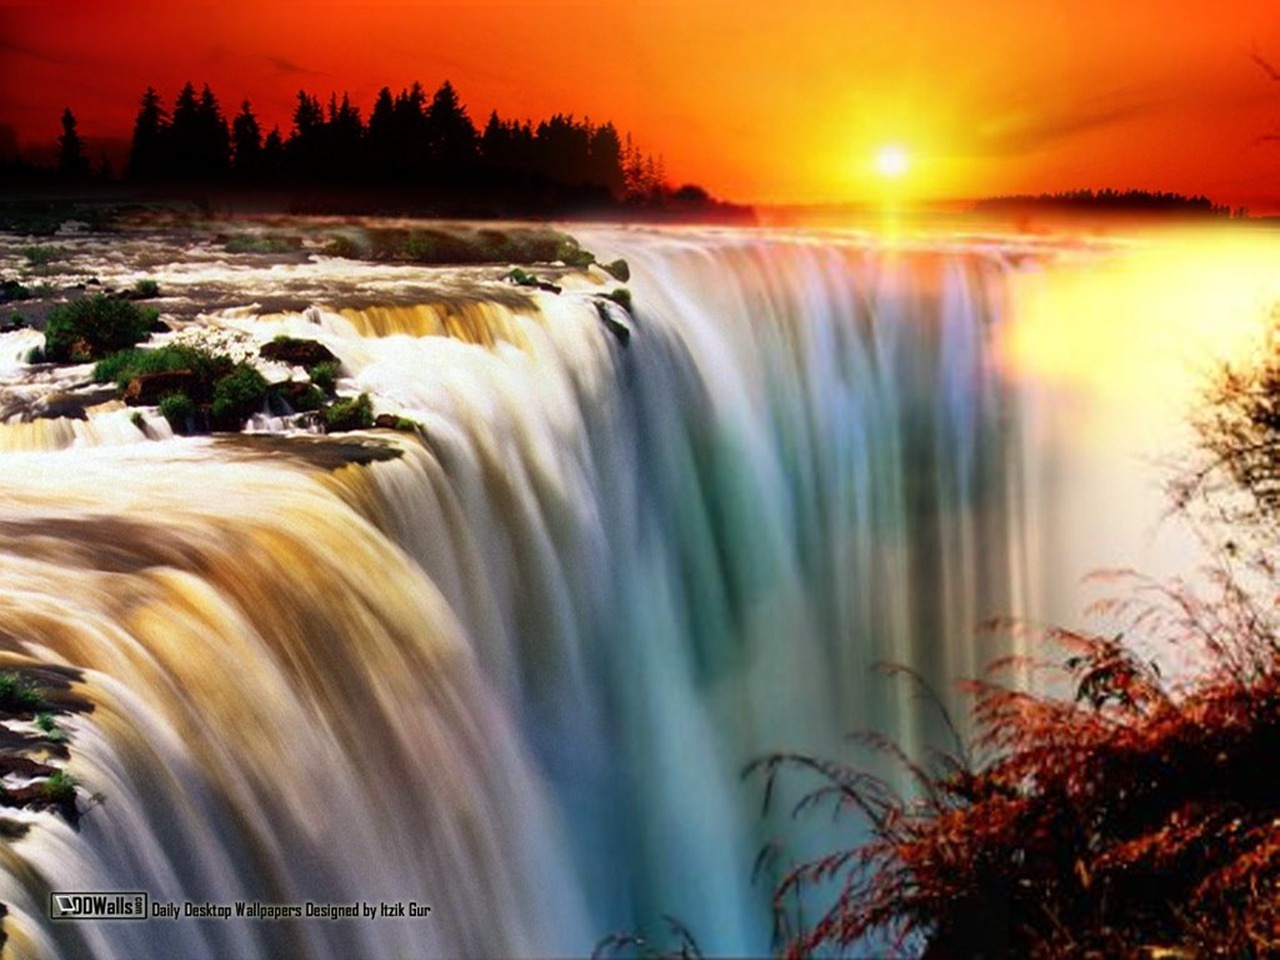 immagini fantastiche per lo sfondo,cascata,paesaggio naturale,corpo d'acqua,natura,risorse idriche